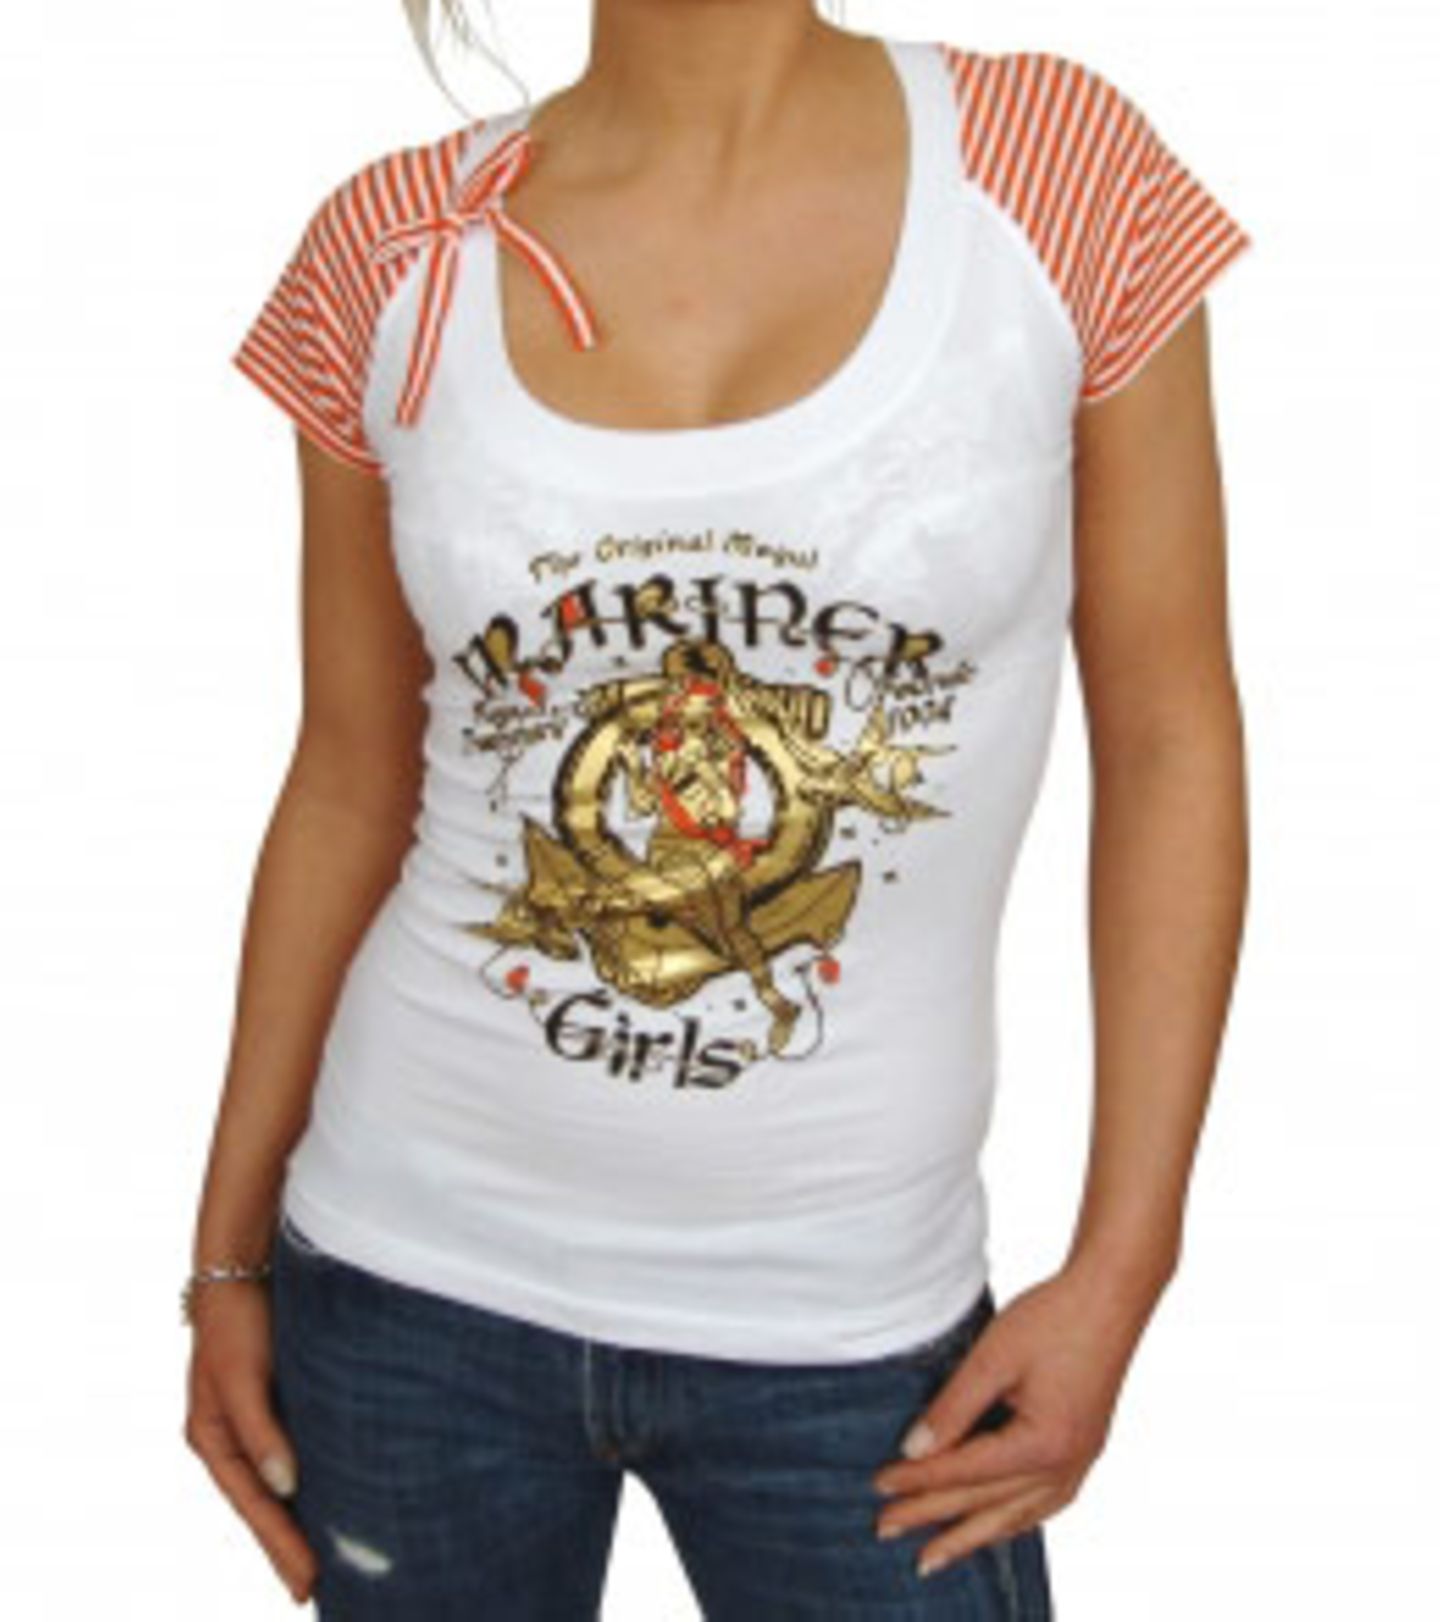 Leinen los für dieses rot-gestreifte Shirt von Mogul im Marine-Stil mit Golddruck. Um sich den Sommer zurückzuholen, einfach reinschlüpfen und Ahoi!    Preis: 29,95 Euro zzgl. Versandkosten Zu bestellen bei: www.abnorm-shop.de